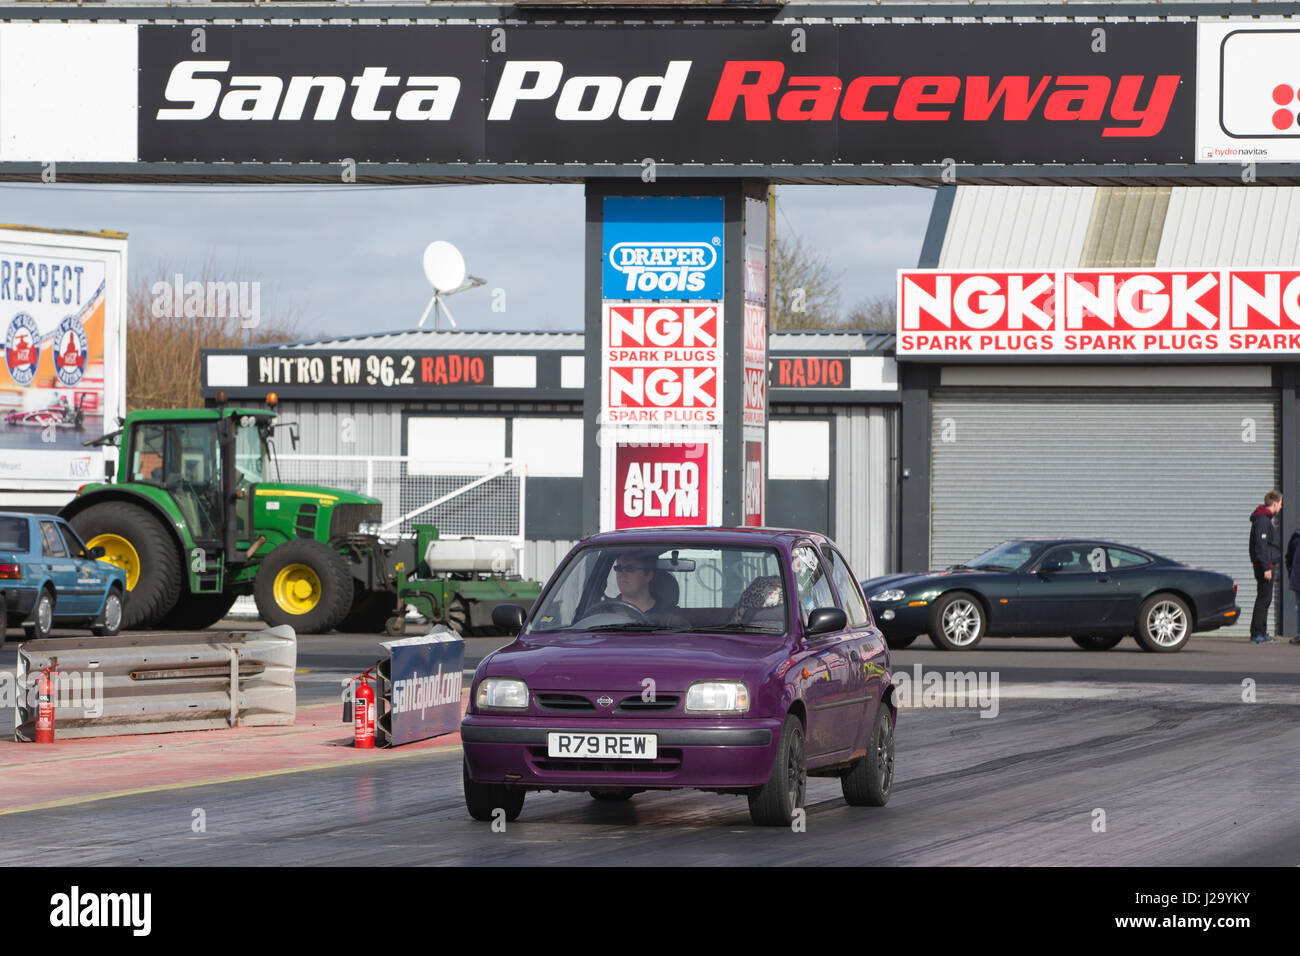 Santa Pod Raceway, befindet sich in Podington, Bedfordshire, England, ist Europas erste permanente Drag-Racing, gebaut auf einem stillgelegten WWII Luftwaffenstützpunkt. Stockfoto